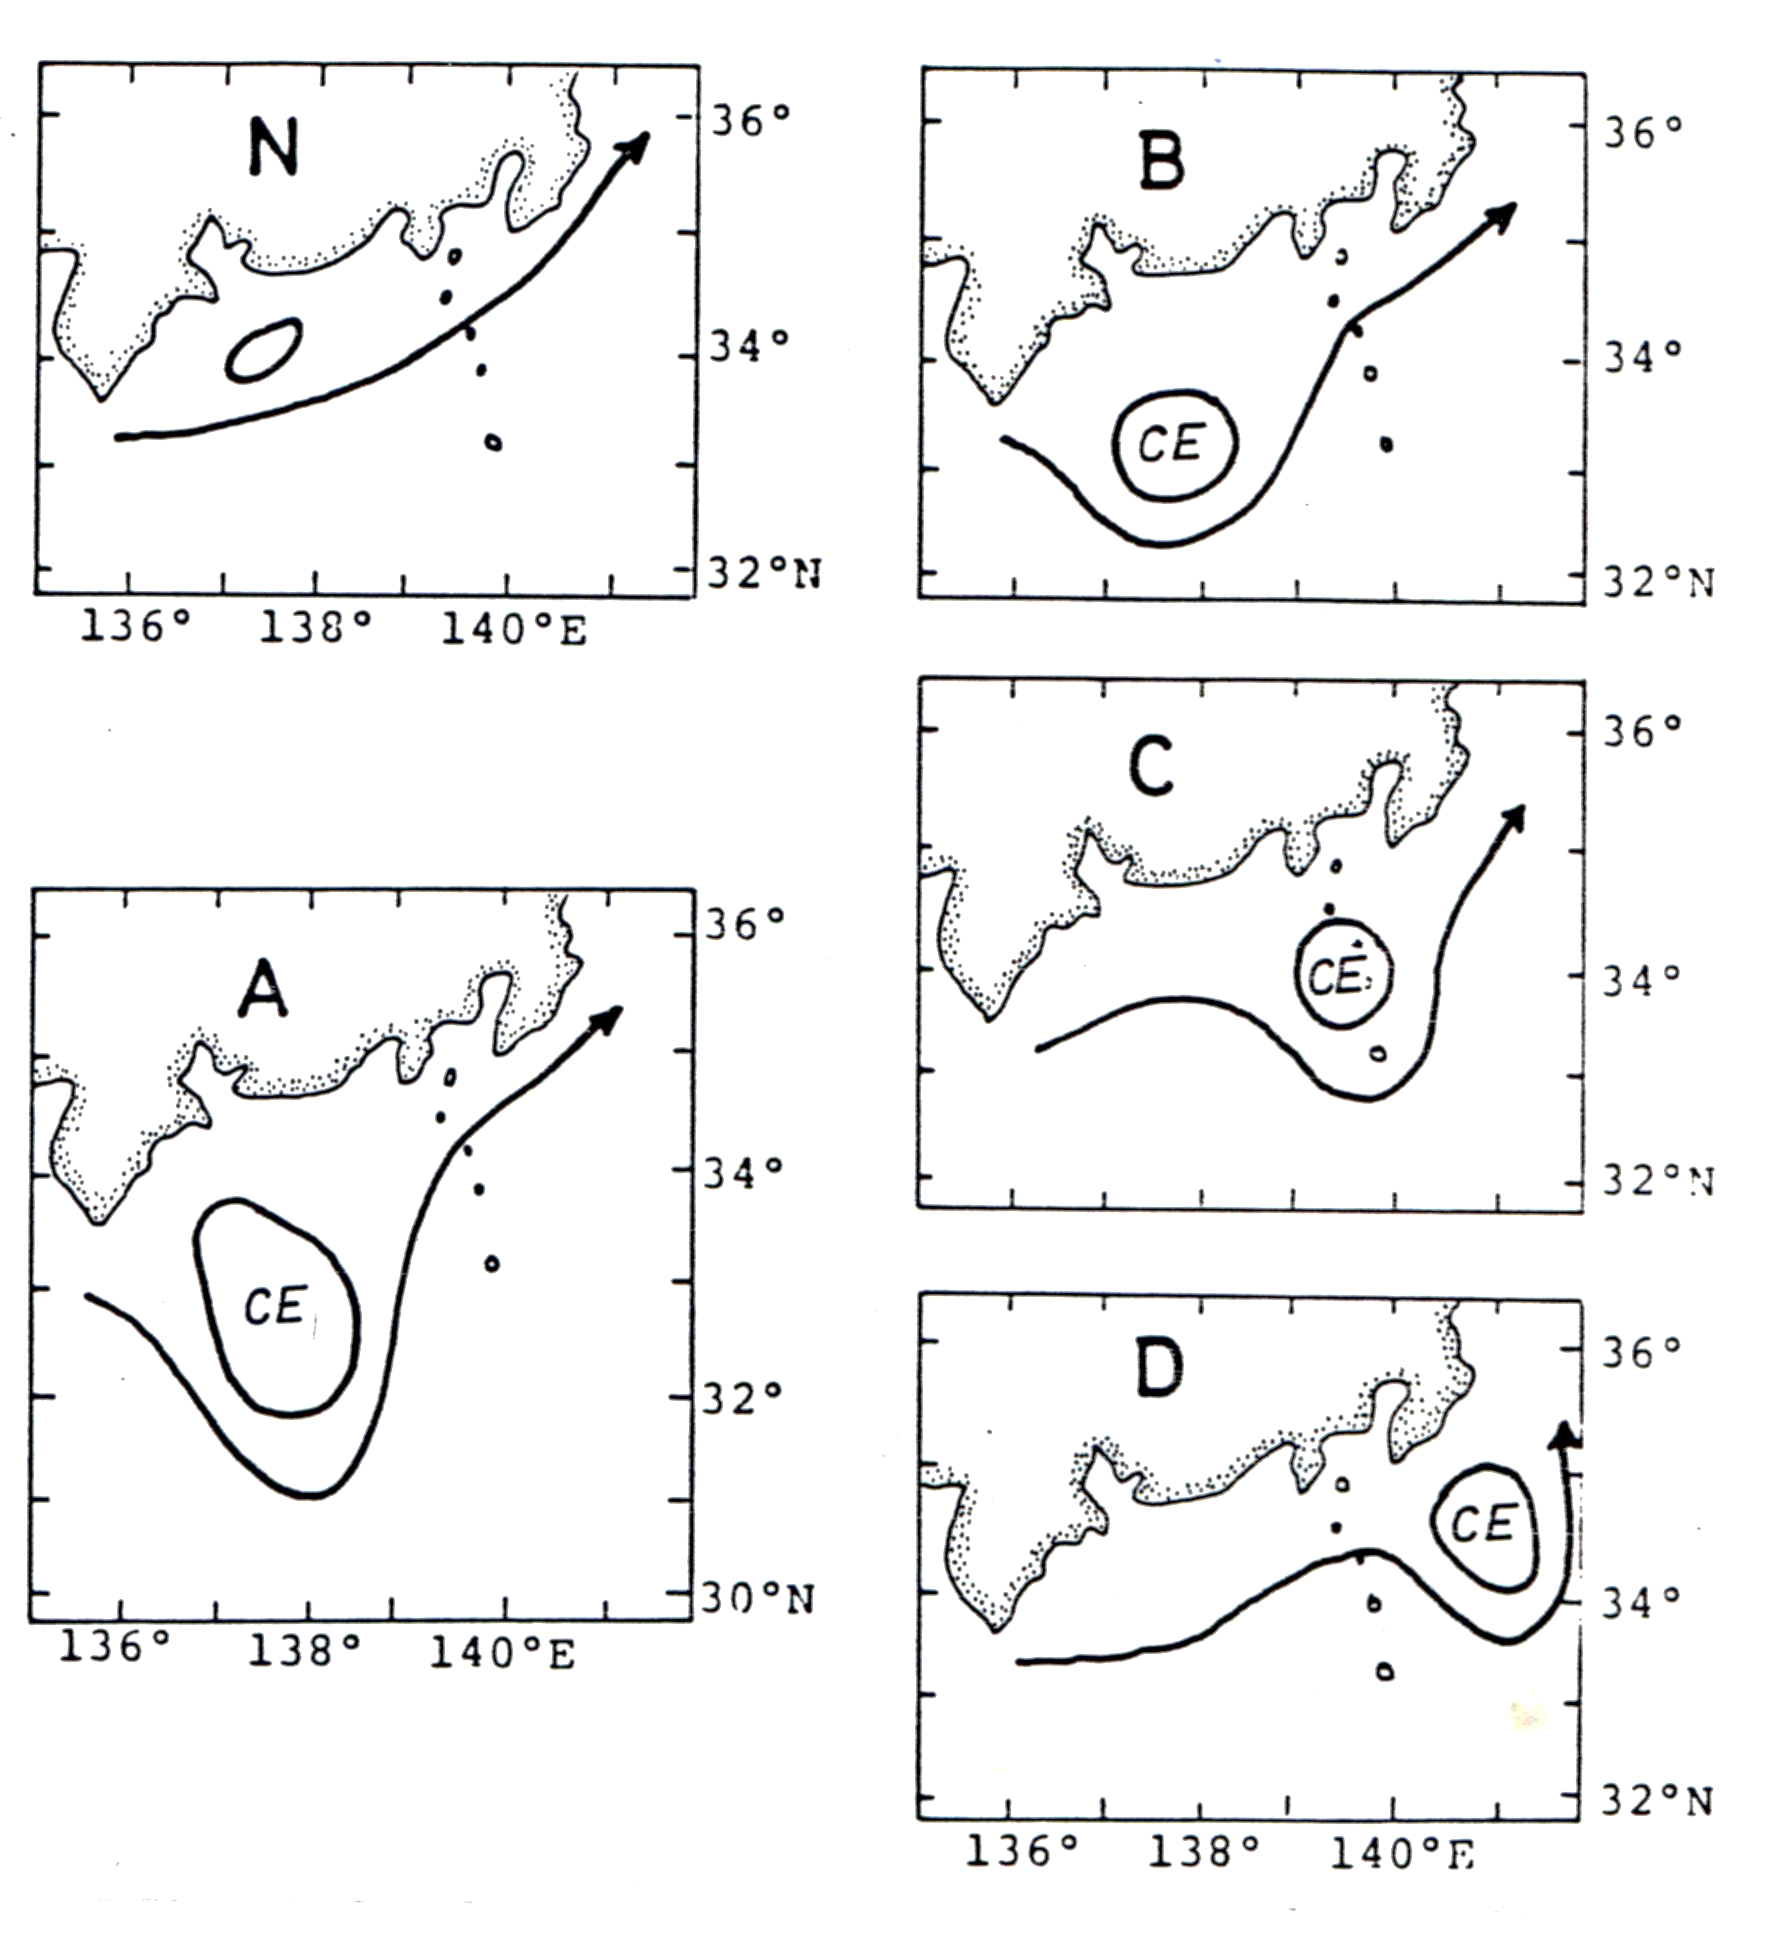 日本本州外海黑潮大蛇行現象及冷水塊 (cold eddy, CE) 的形成。正常型 (N) 沒有冷水塊出現。大蛇行現象依冷水塊位置分為ABCD四型。黑潮大蛇行影響相模灣定置網的鯖魚漁獲量 (曾東京大學博士論文, 1980)